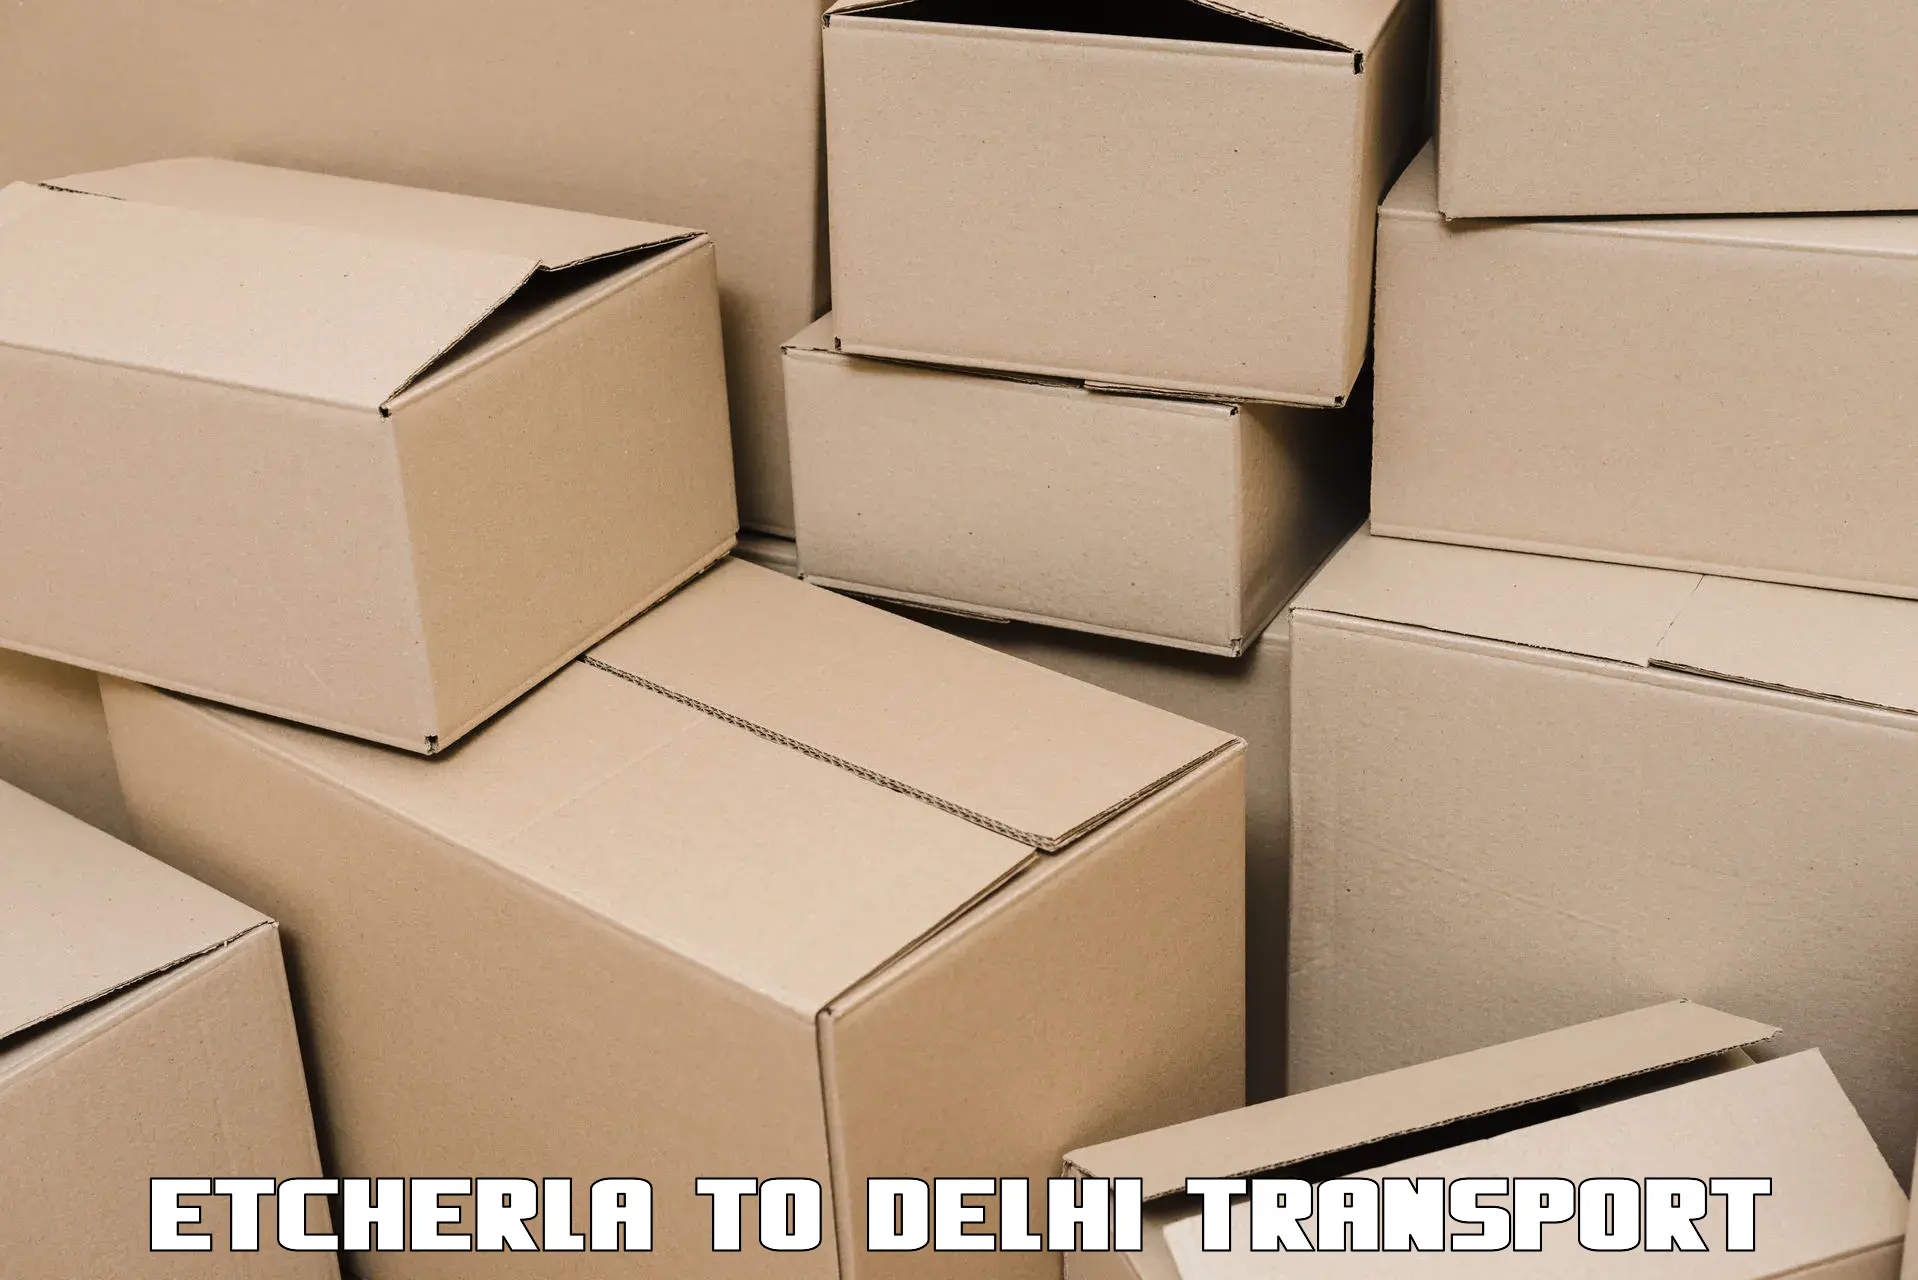 Nearby transport service Etcherla to Delhi Technological University DTU